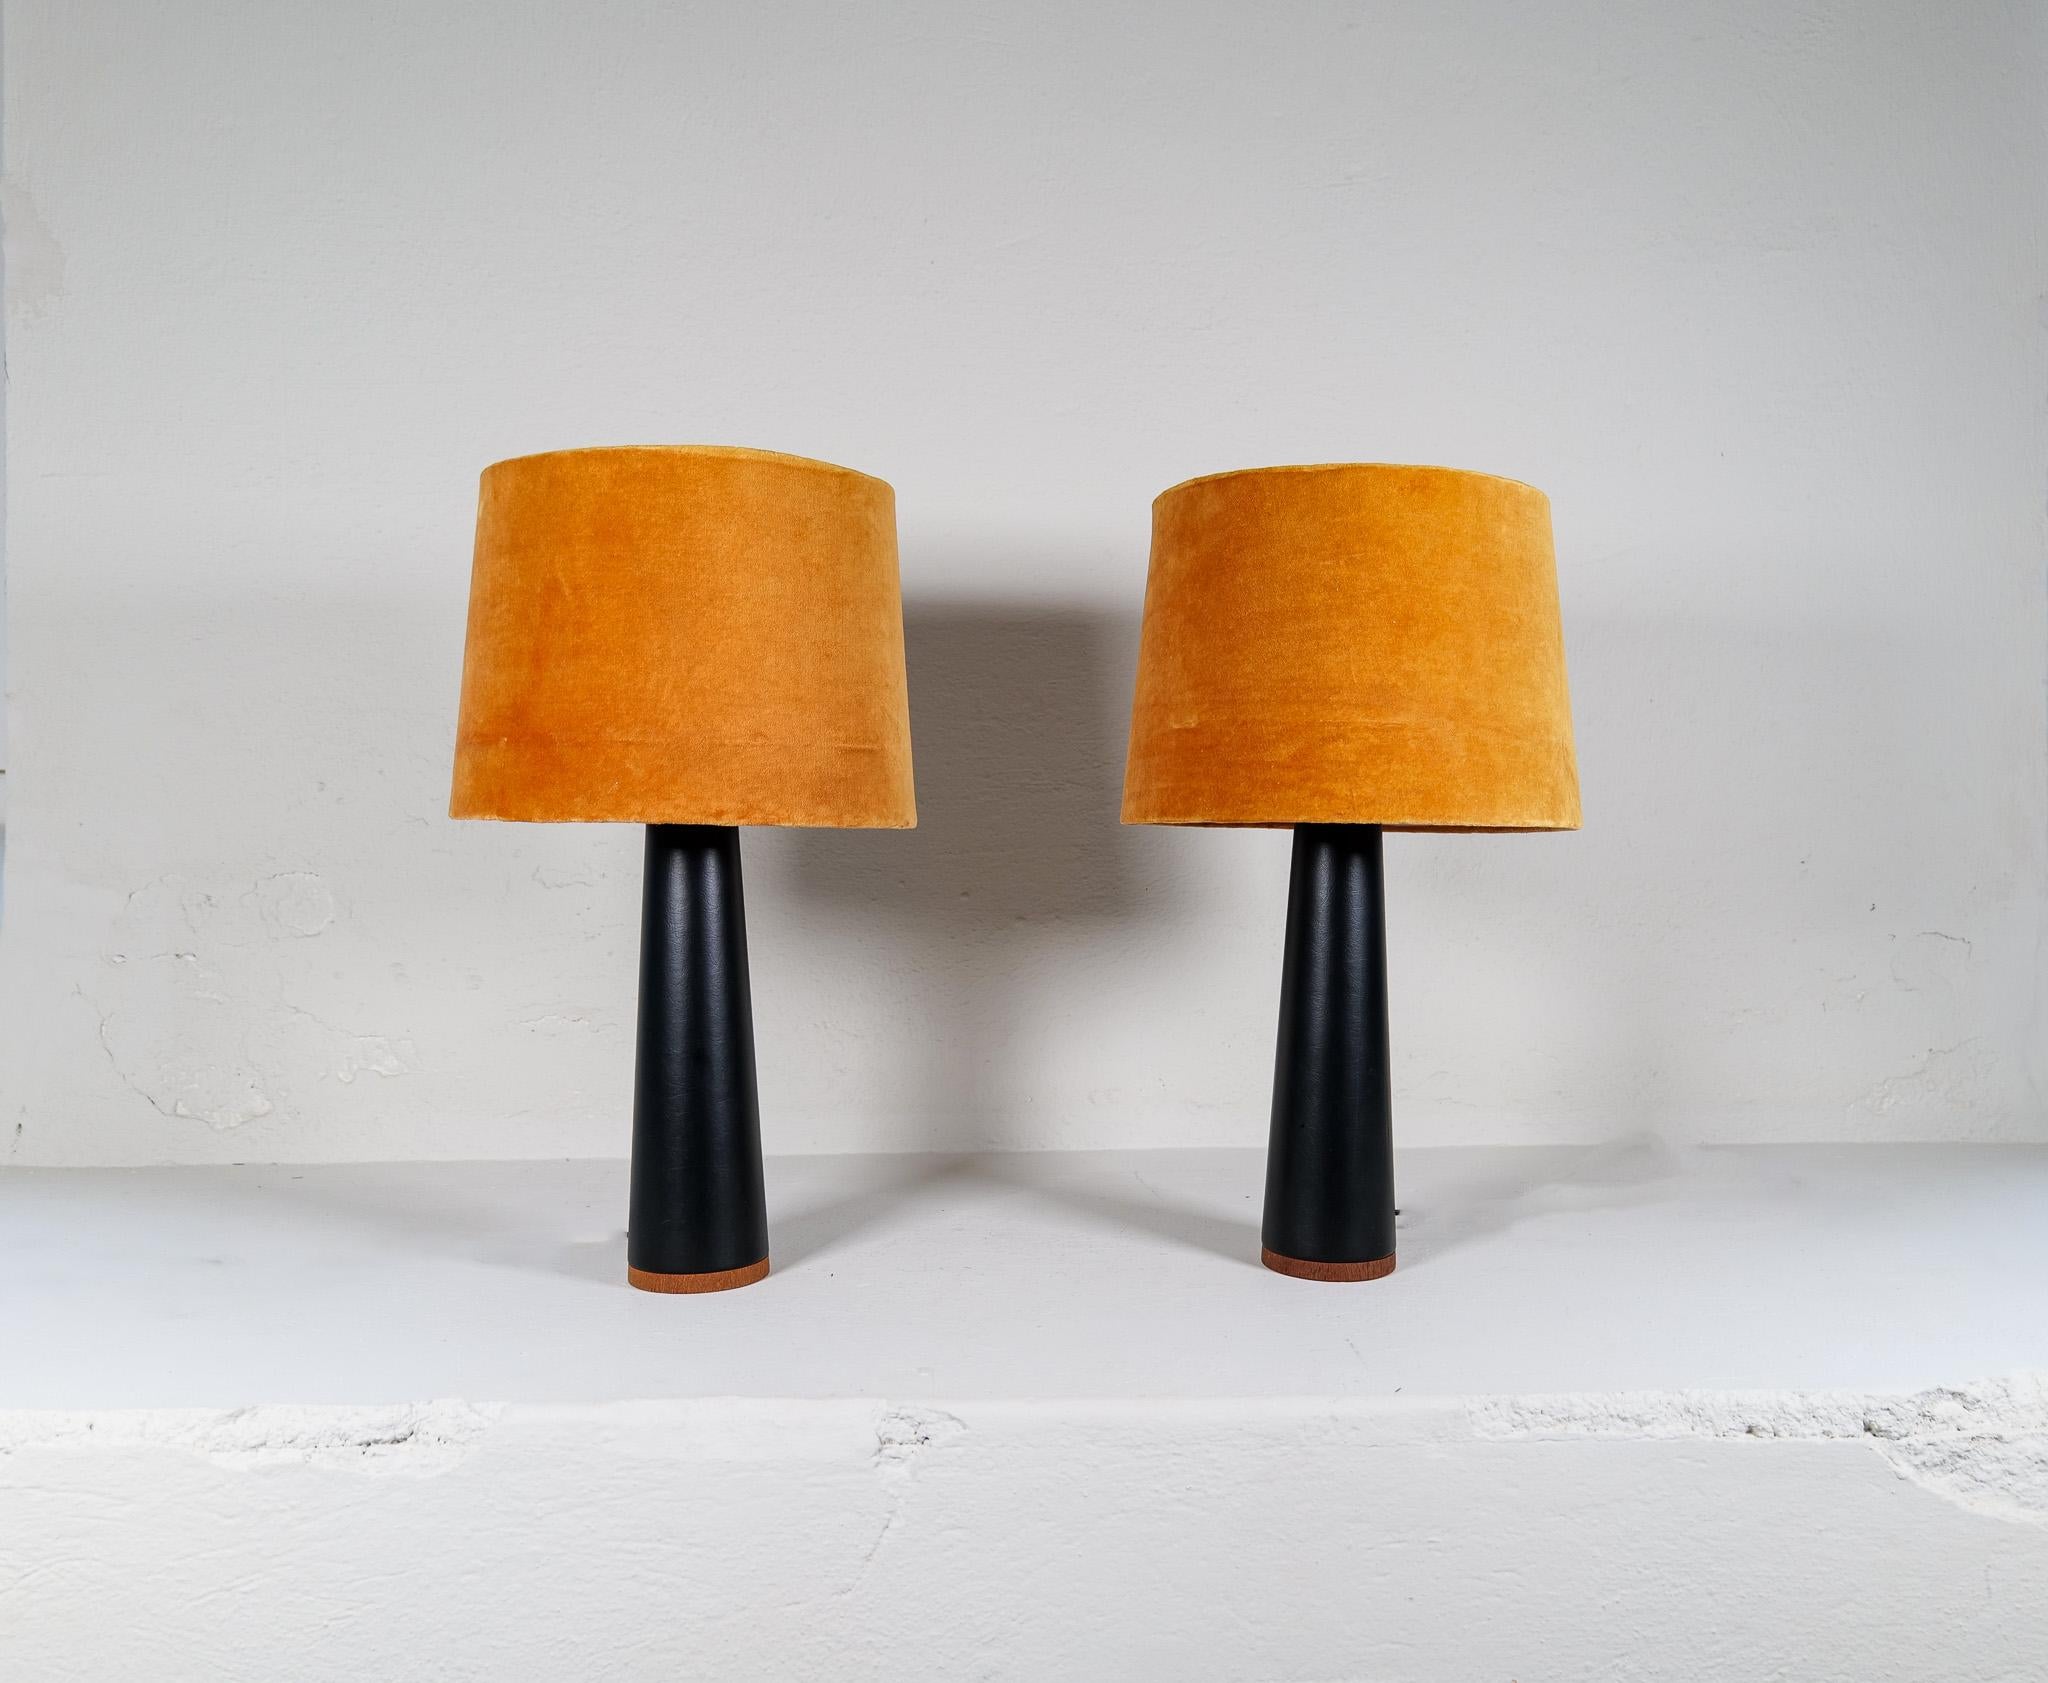 Paar Tischlampen hergestellt in Schweden und produziert von berühmten Luxus. Sie sind aus schwarzem Kunstleder mit Nähten um einen Teakholzsockel gefertigt. 

Schöner Vintage-Zustand.

Abmessungen: Höhe 37cm, Sockel 11 Durchmesser, mit Schirm Höhe